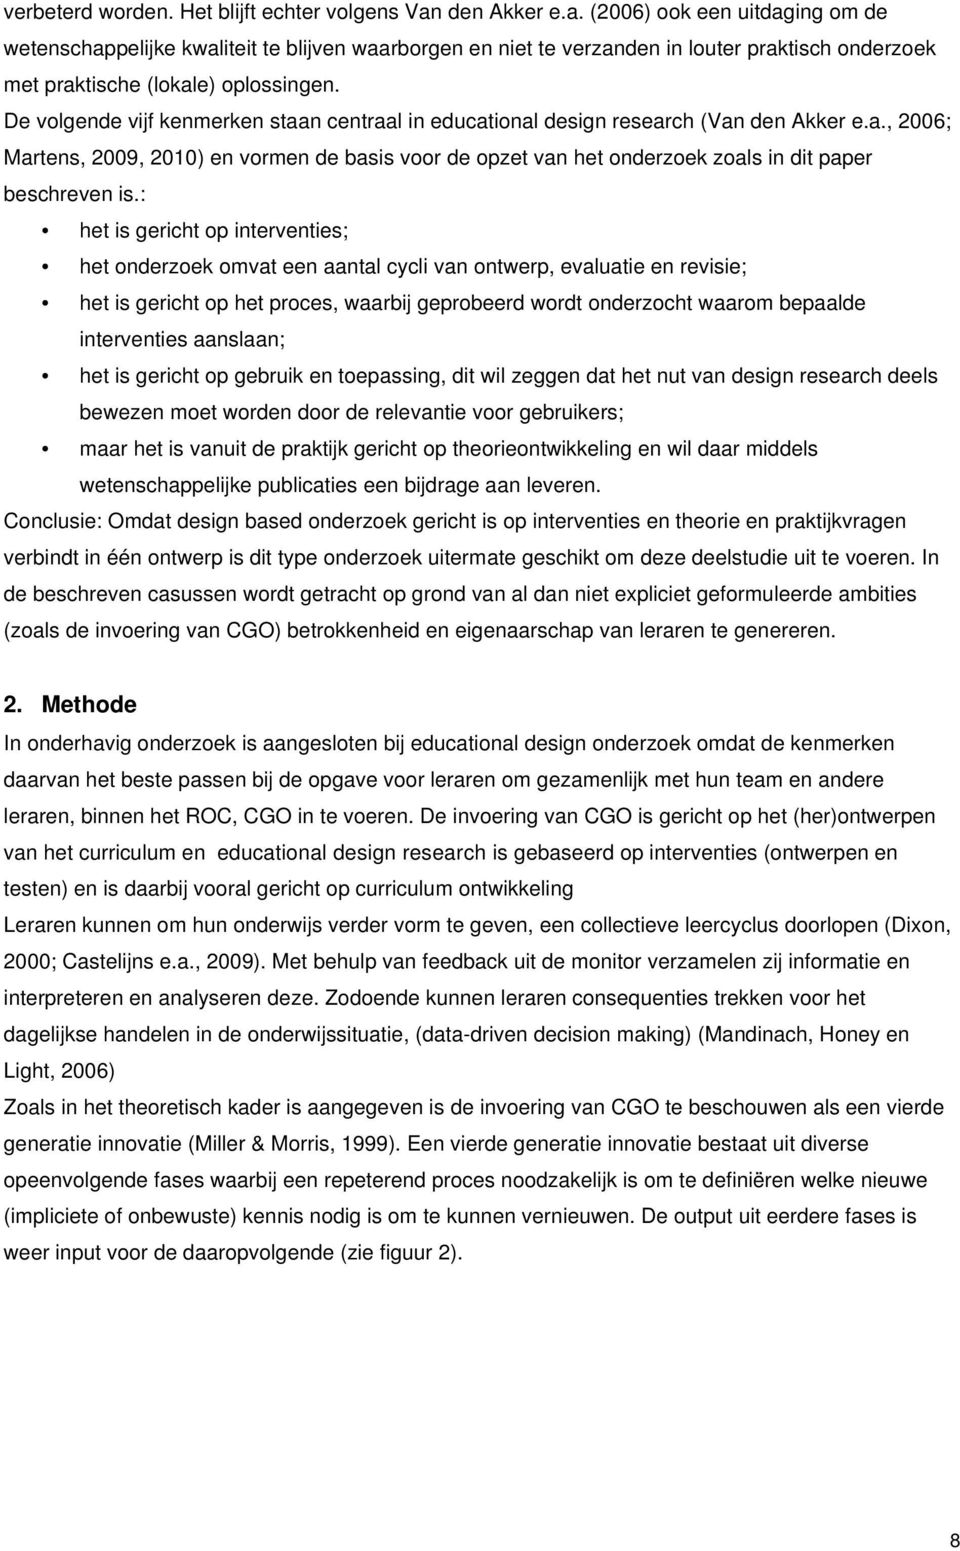 De volgende vijf kenmerken staan centraal in educational design research (Van den Akker e.a., 2006; Martens, 2009, 2010) en vormen de basis voor de opzet van het onderzoek zoals in dit paper beschreven is.